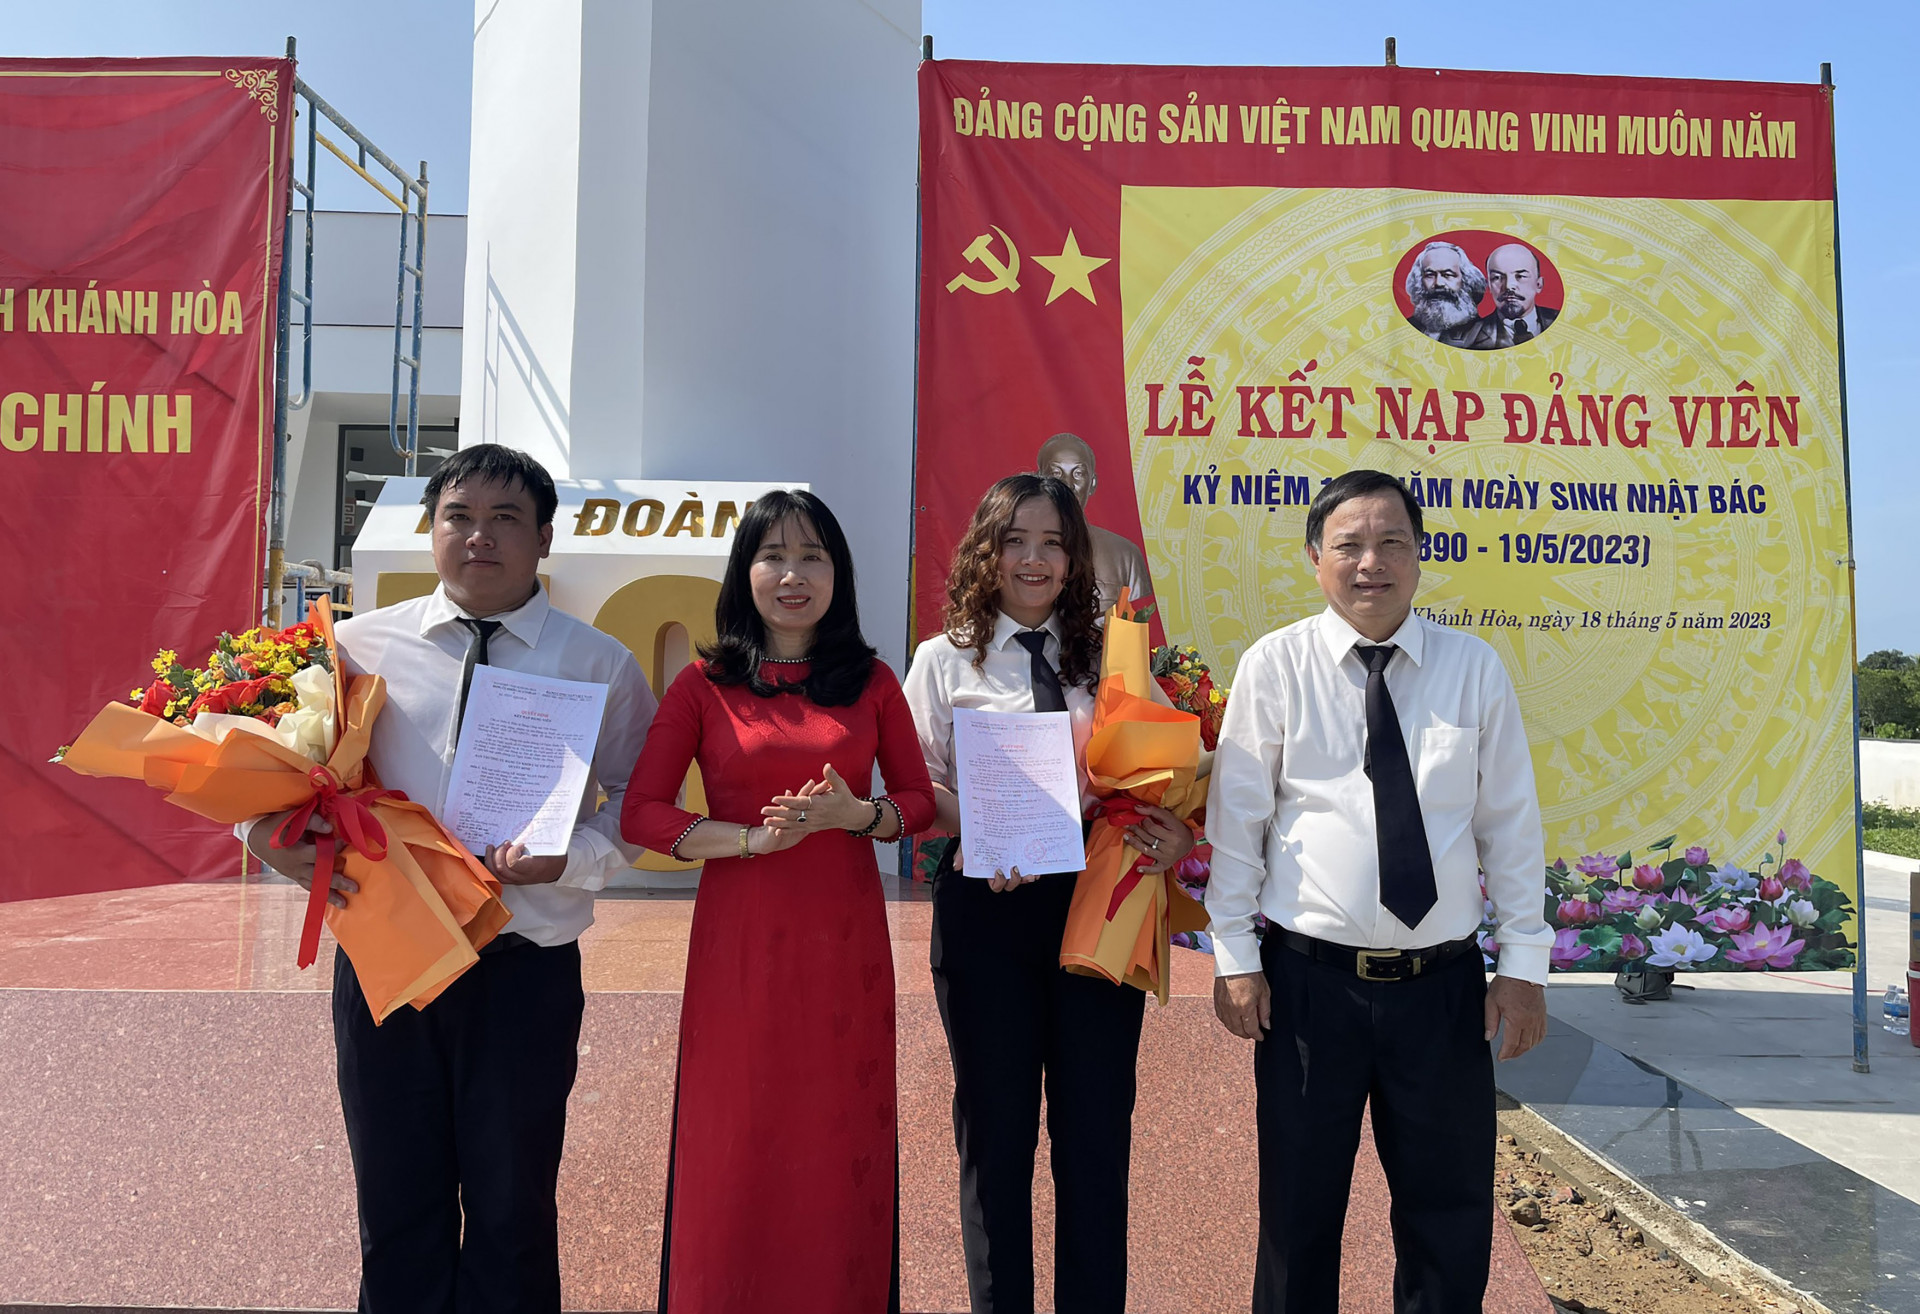 Đồng chí Nguyễn Thị Bích Liên và đồng chí Nguyễn Anh - Bí thư Đảng ủy, Chánh án TAND tỉnh trao quyết định kết nạp đảng viên cho 2 đồng chí. 